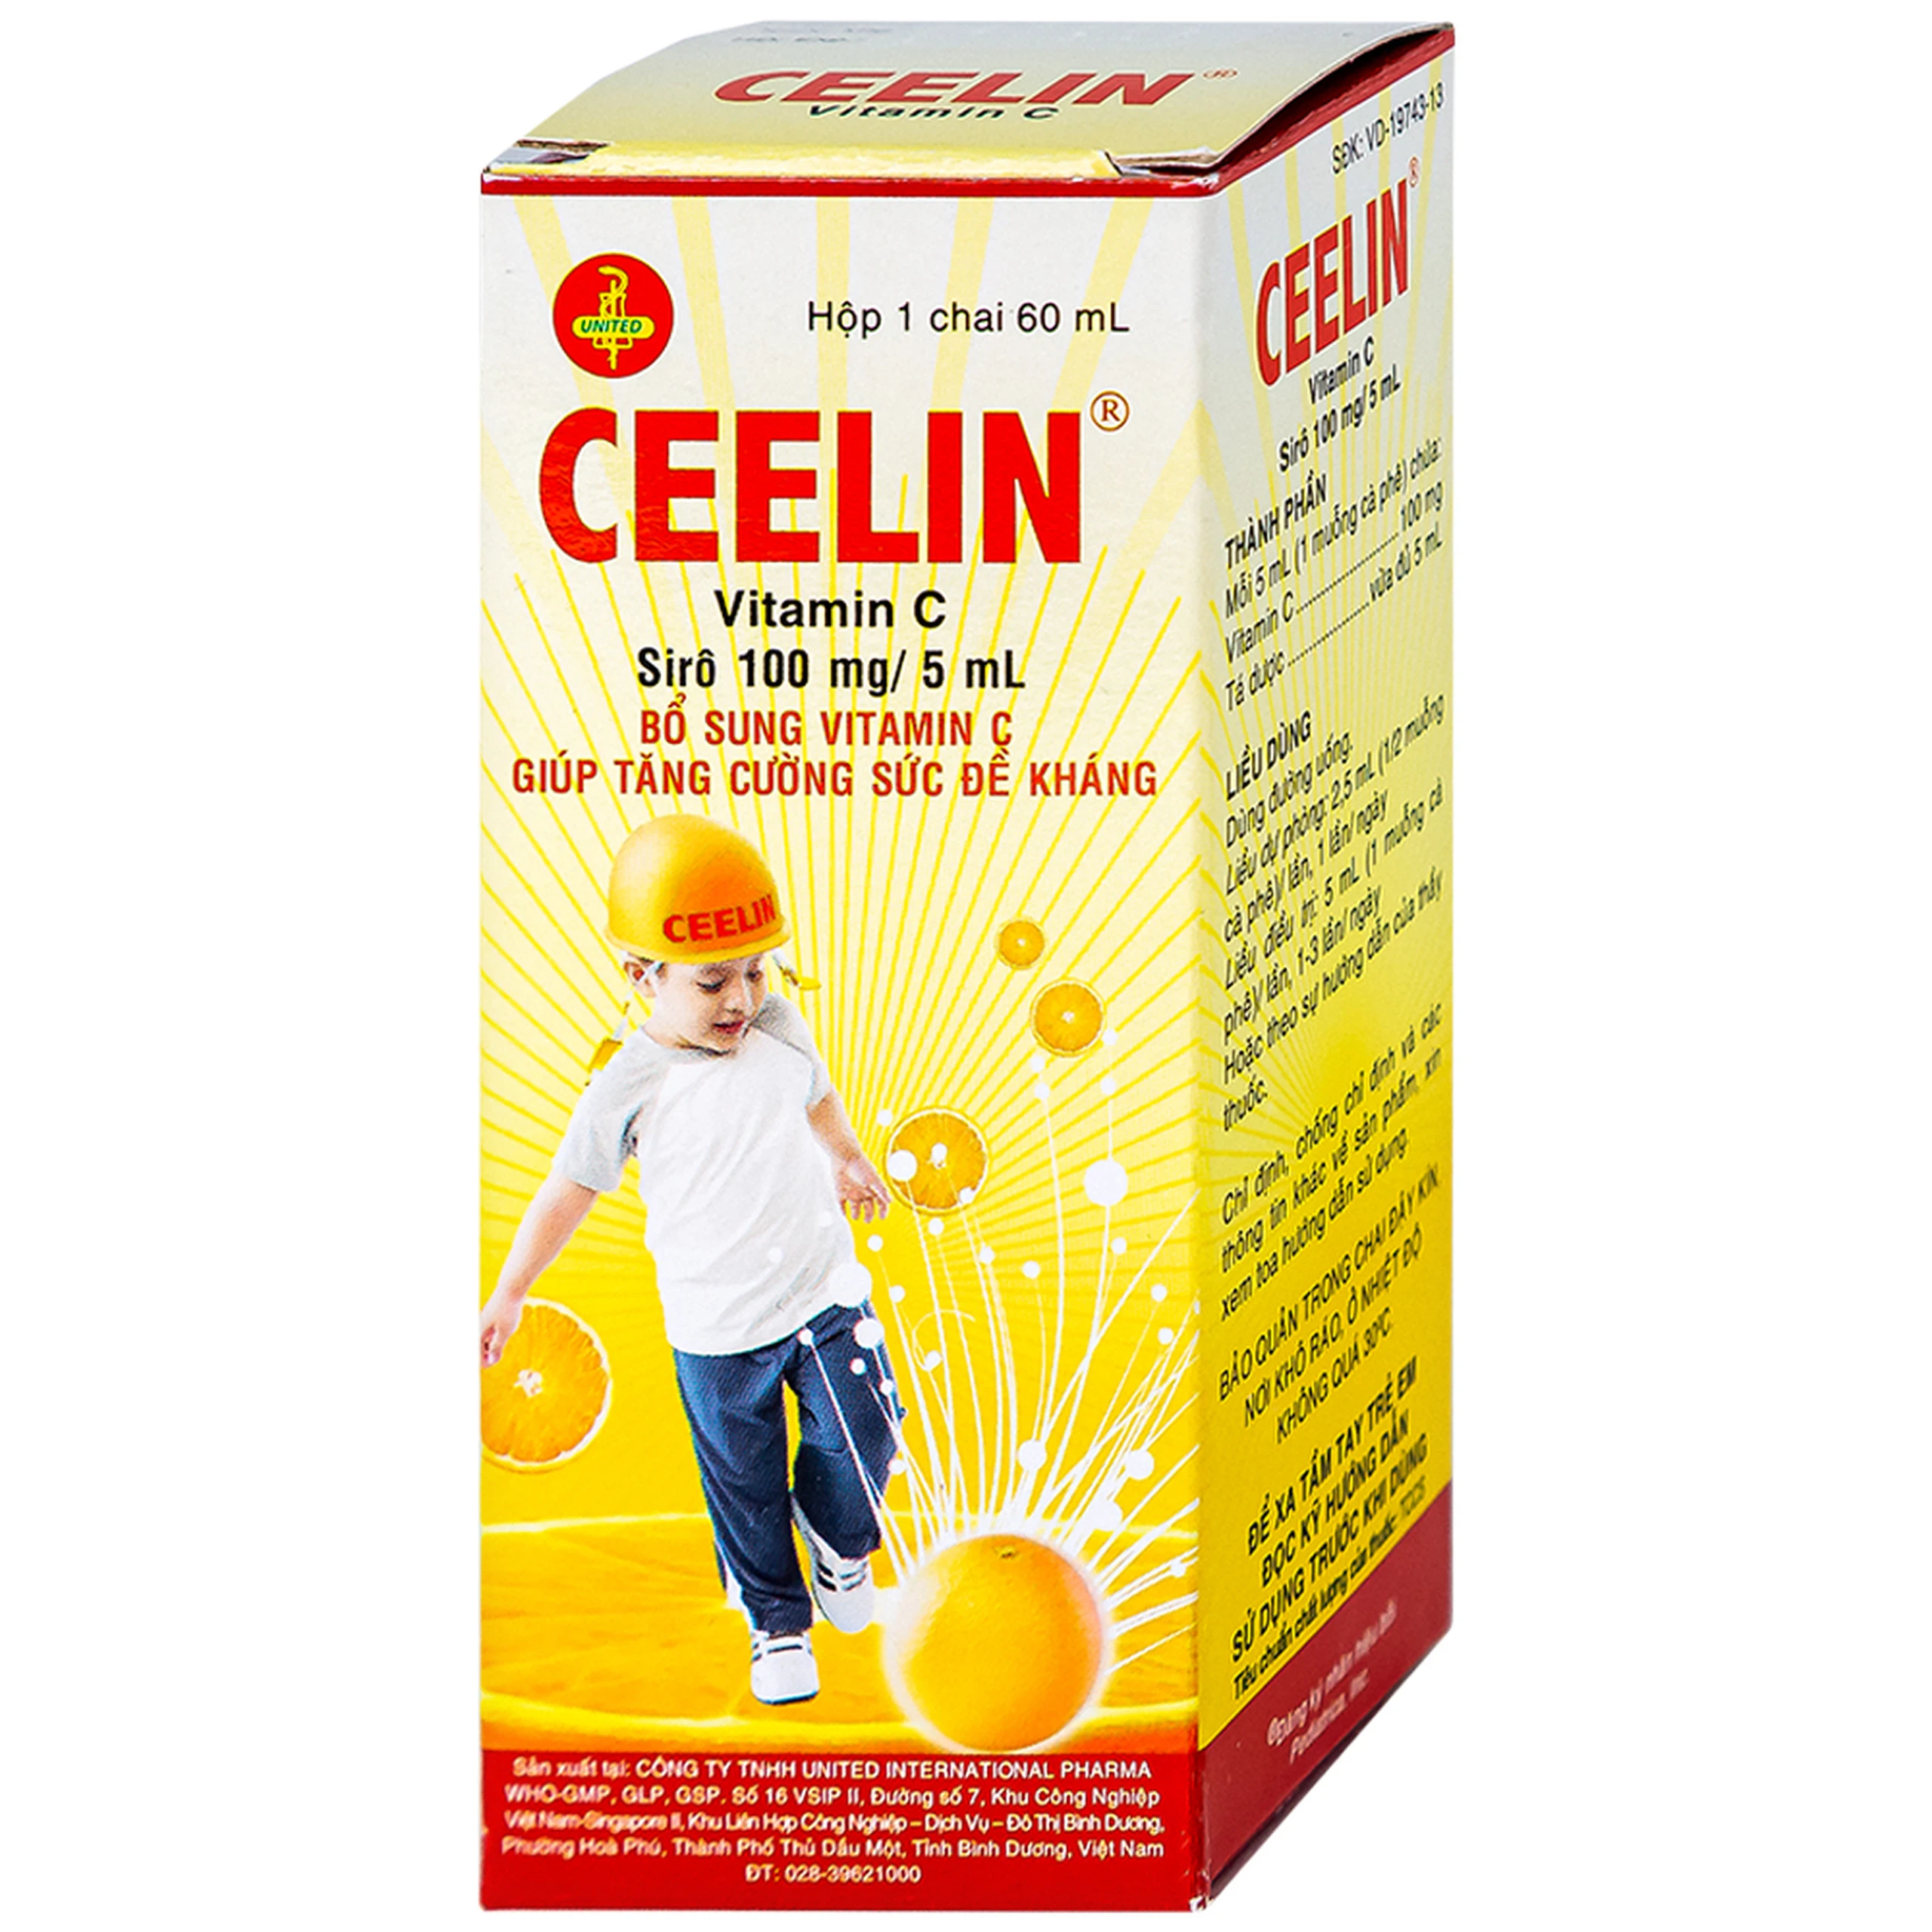 Siro Ceelin United bổ sung vitamin C, tăng cường sức đề kháng (60ml)